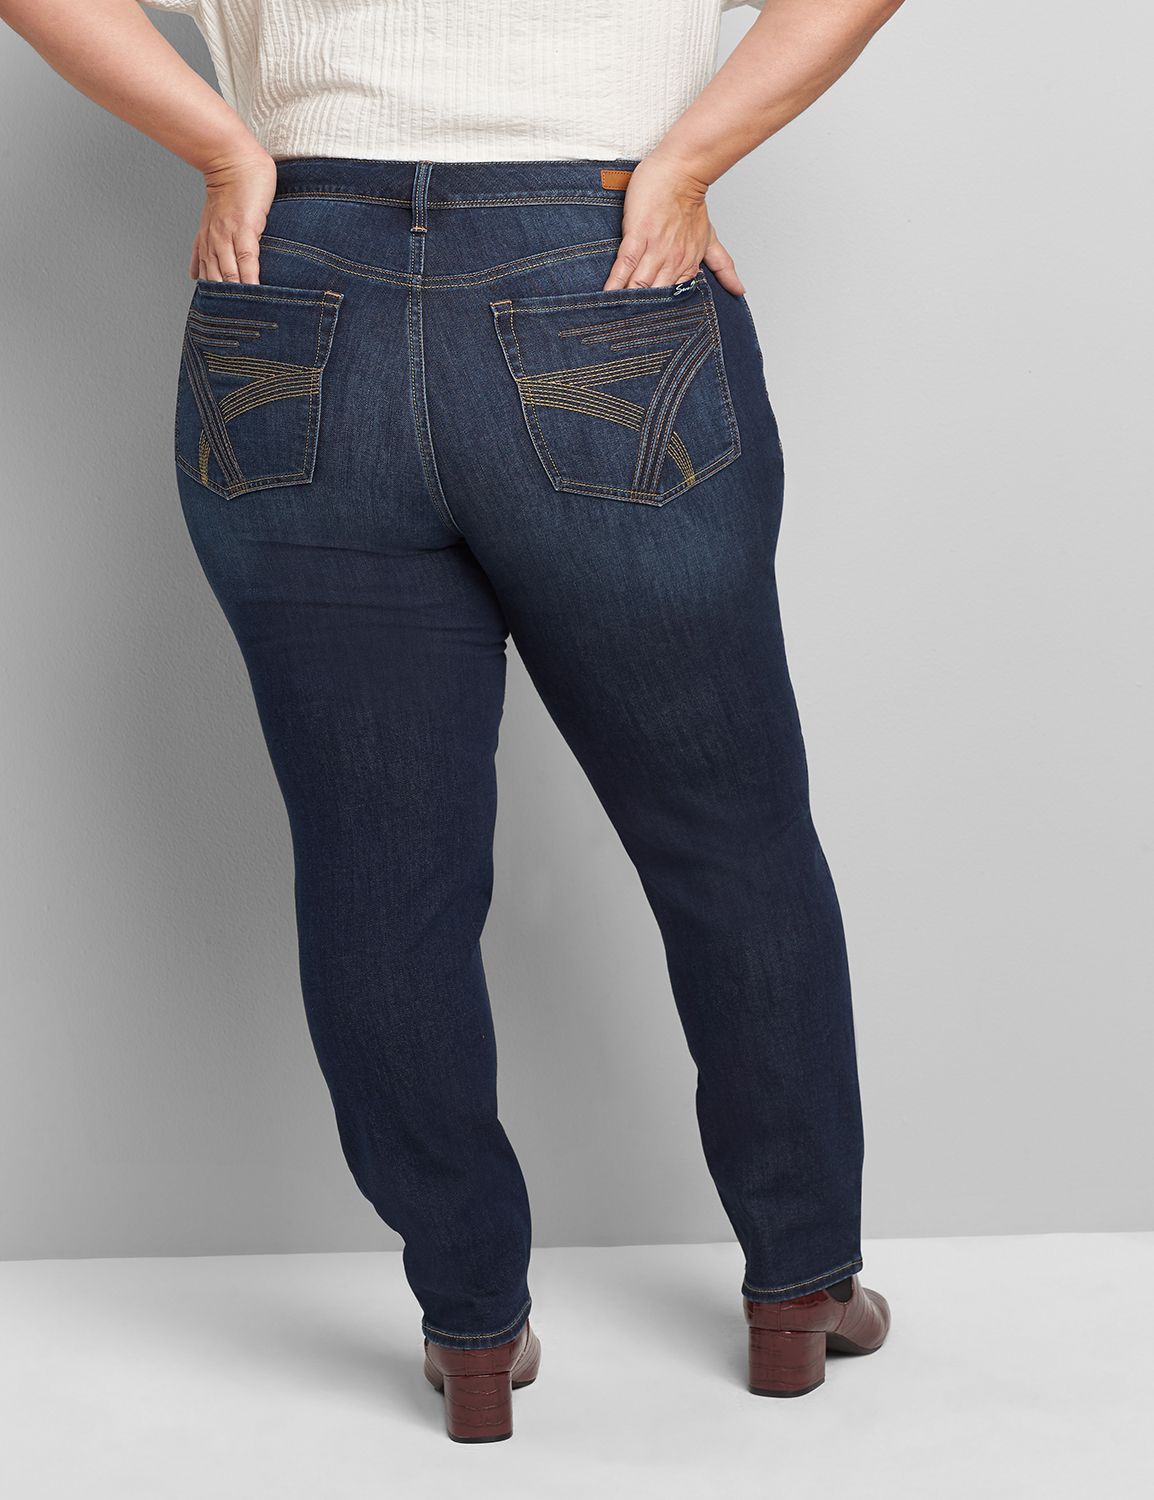 lane bryant seven jeans